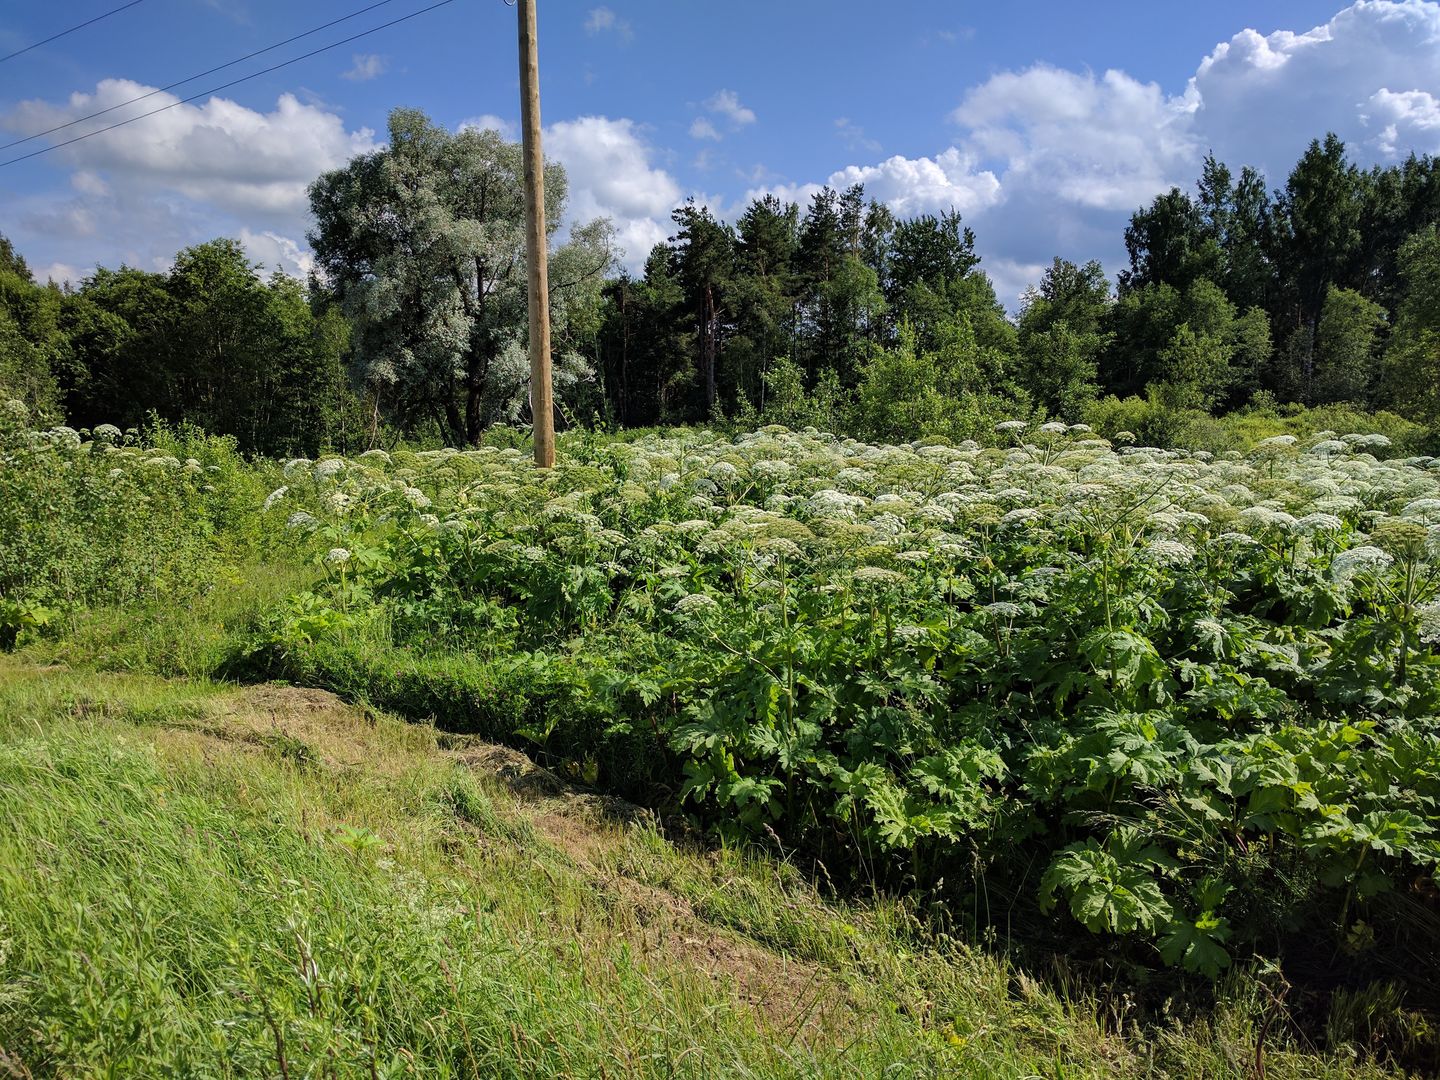 Rośnie w całej Polsce, wydziela toksyczny sok. Miliony na walkę z groźną rośliną